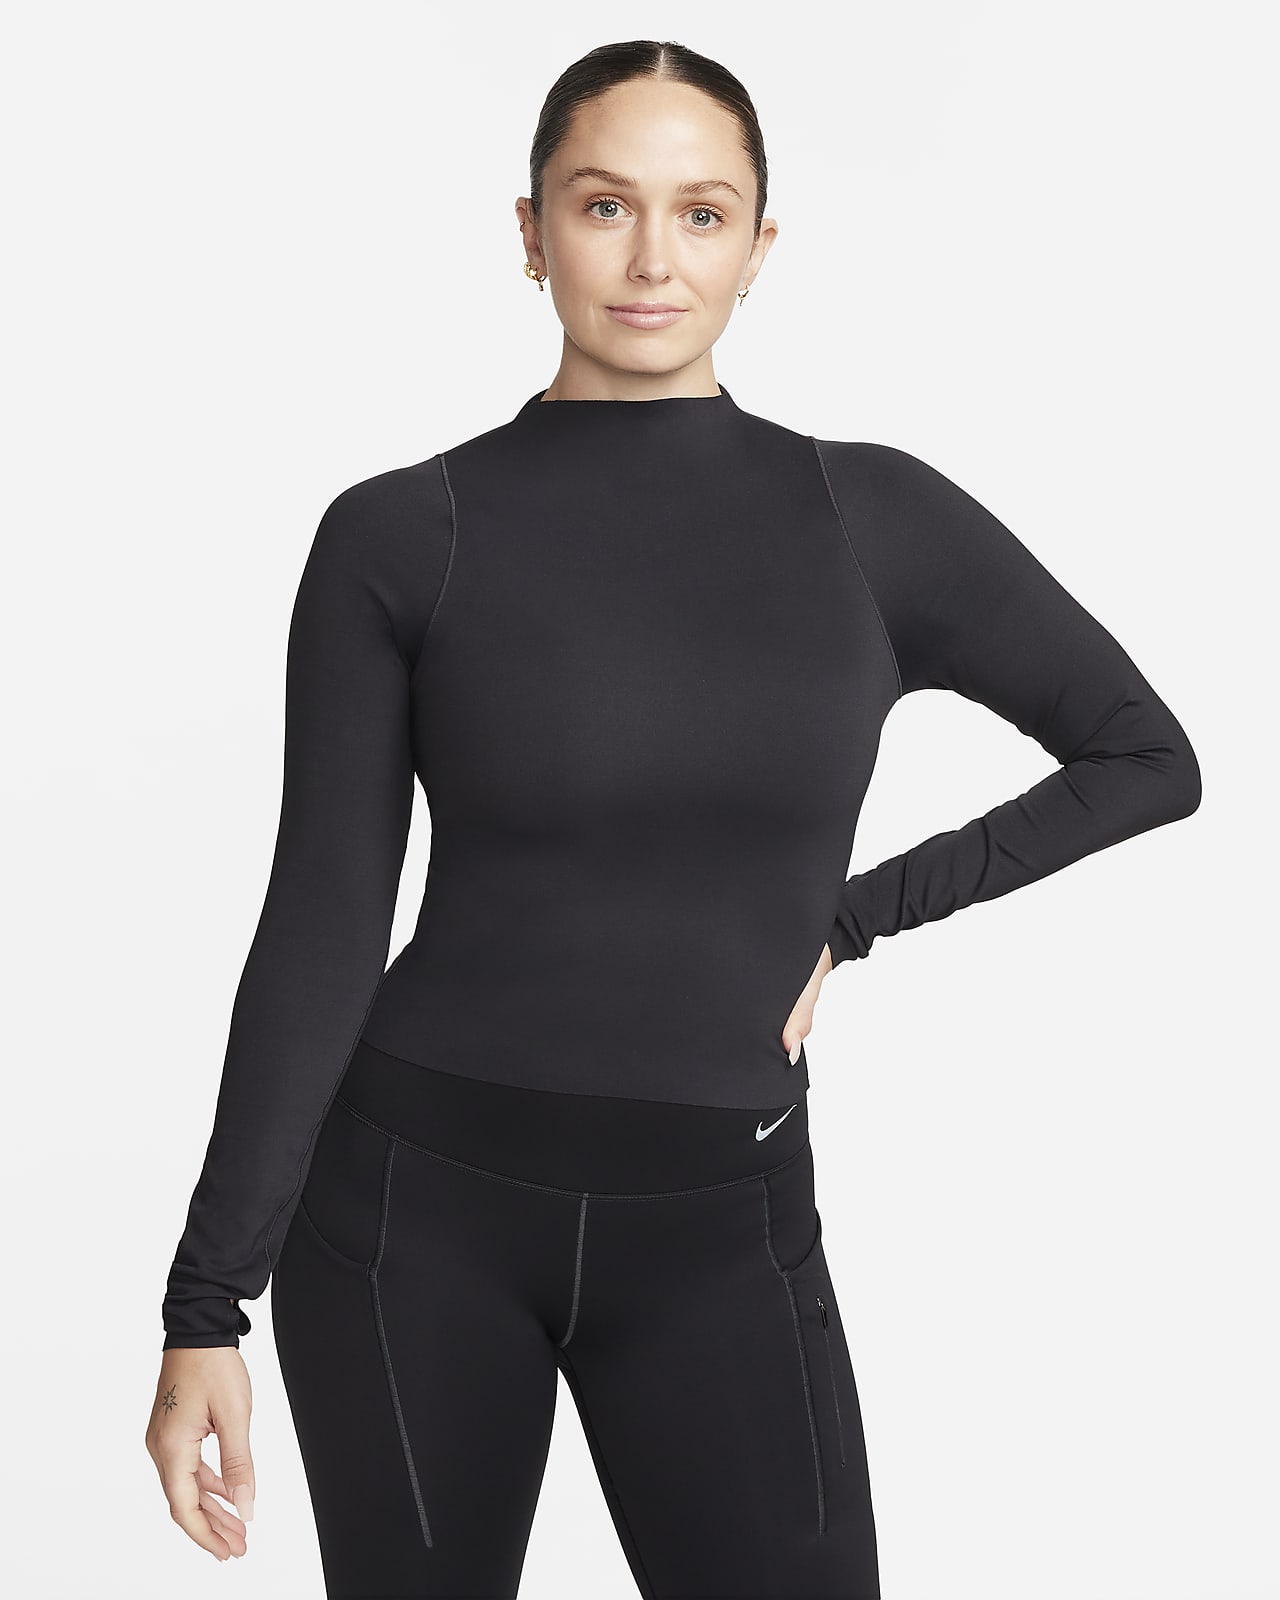 Γυναικεία μακρυμάνικη μπλούζα Dri-FIT Nike Zenvy